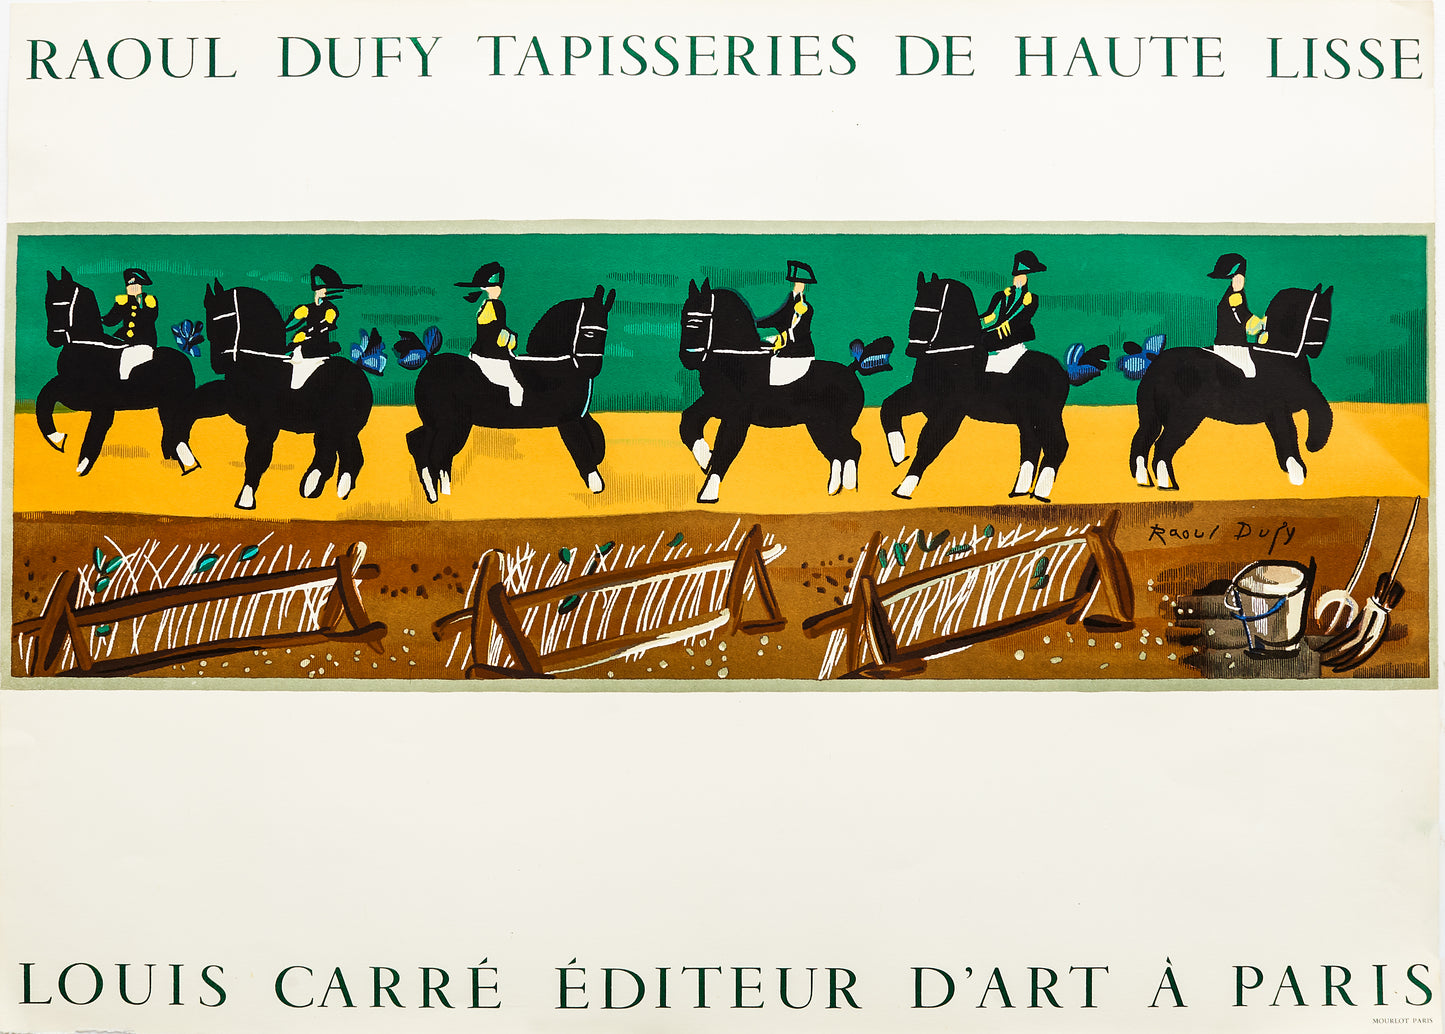 Raoul Dufy - Tapisseries de Haute Lisse (after) Raoul Dufy, 1963